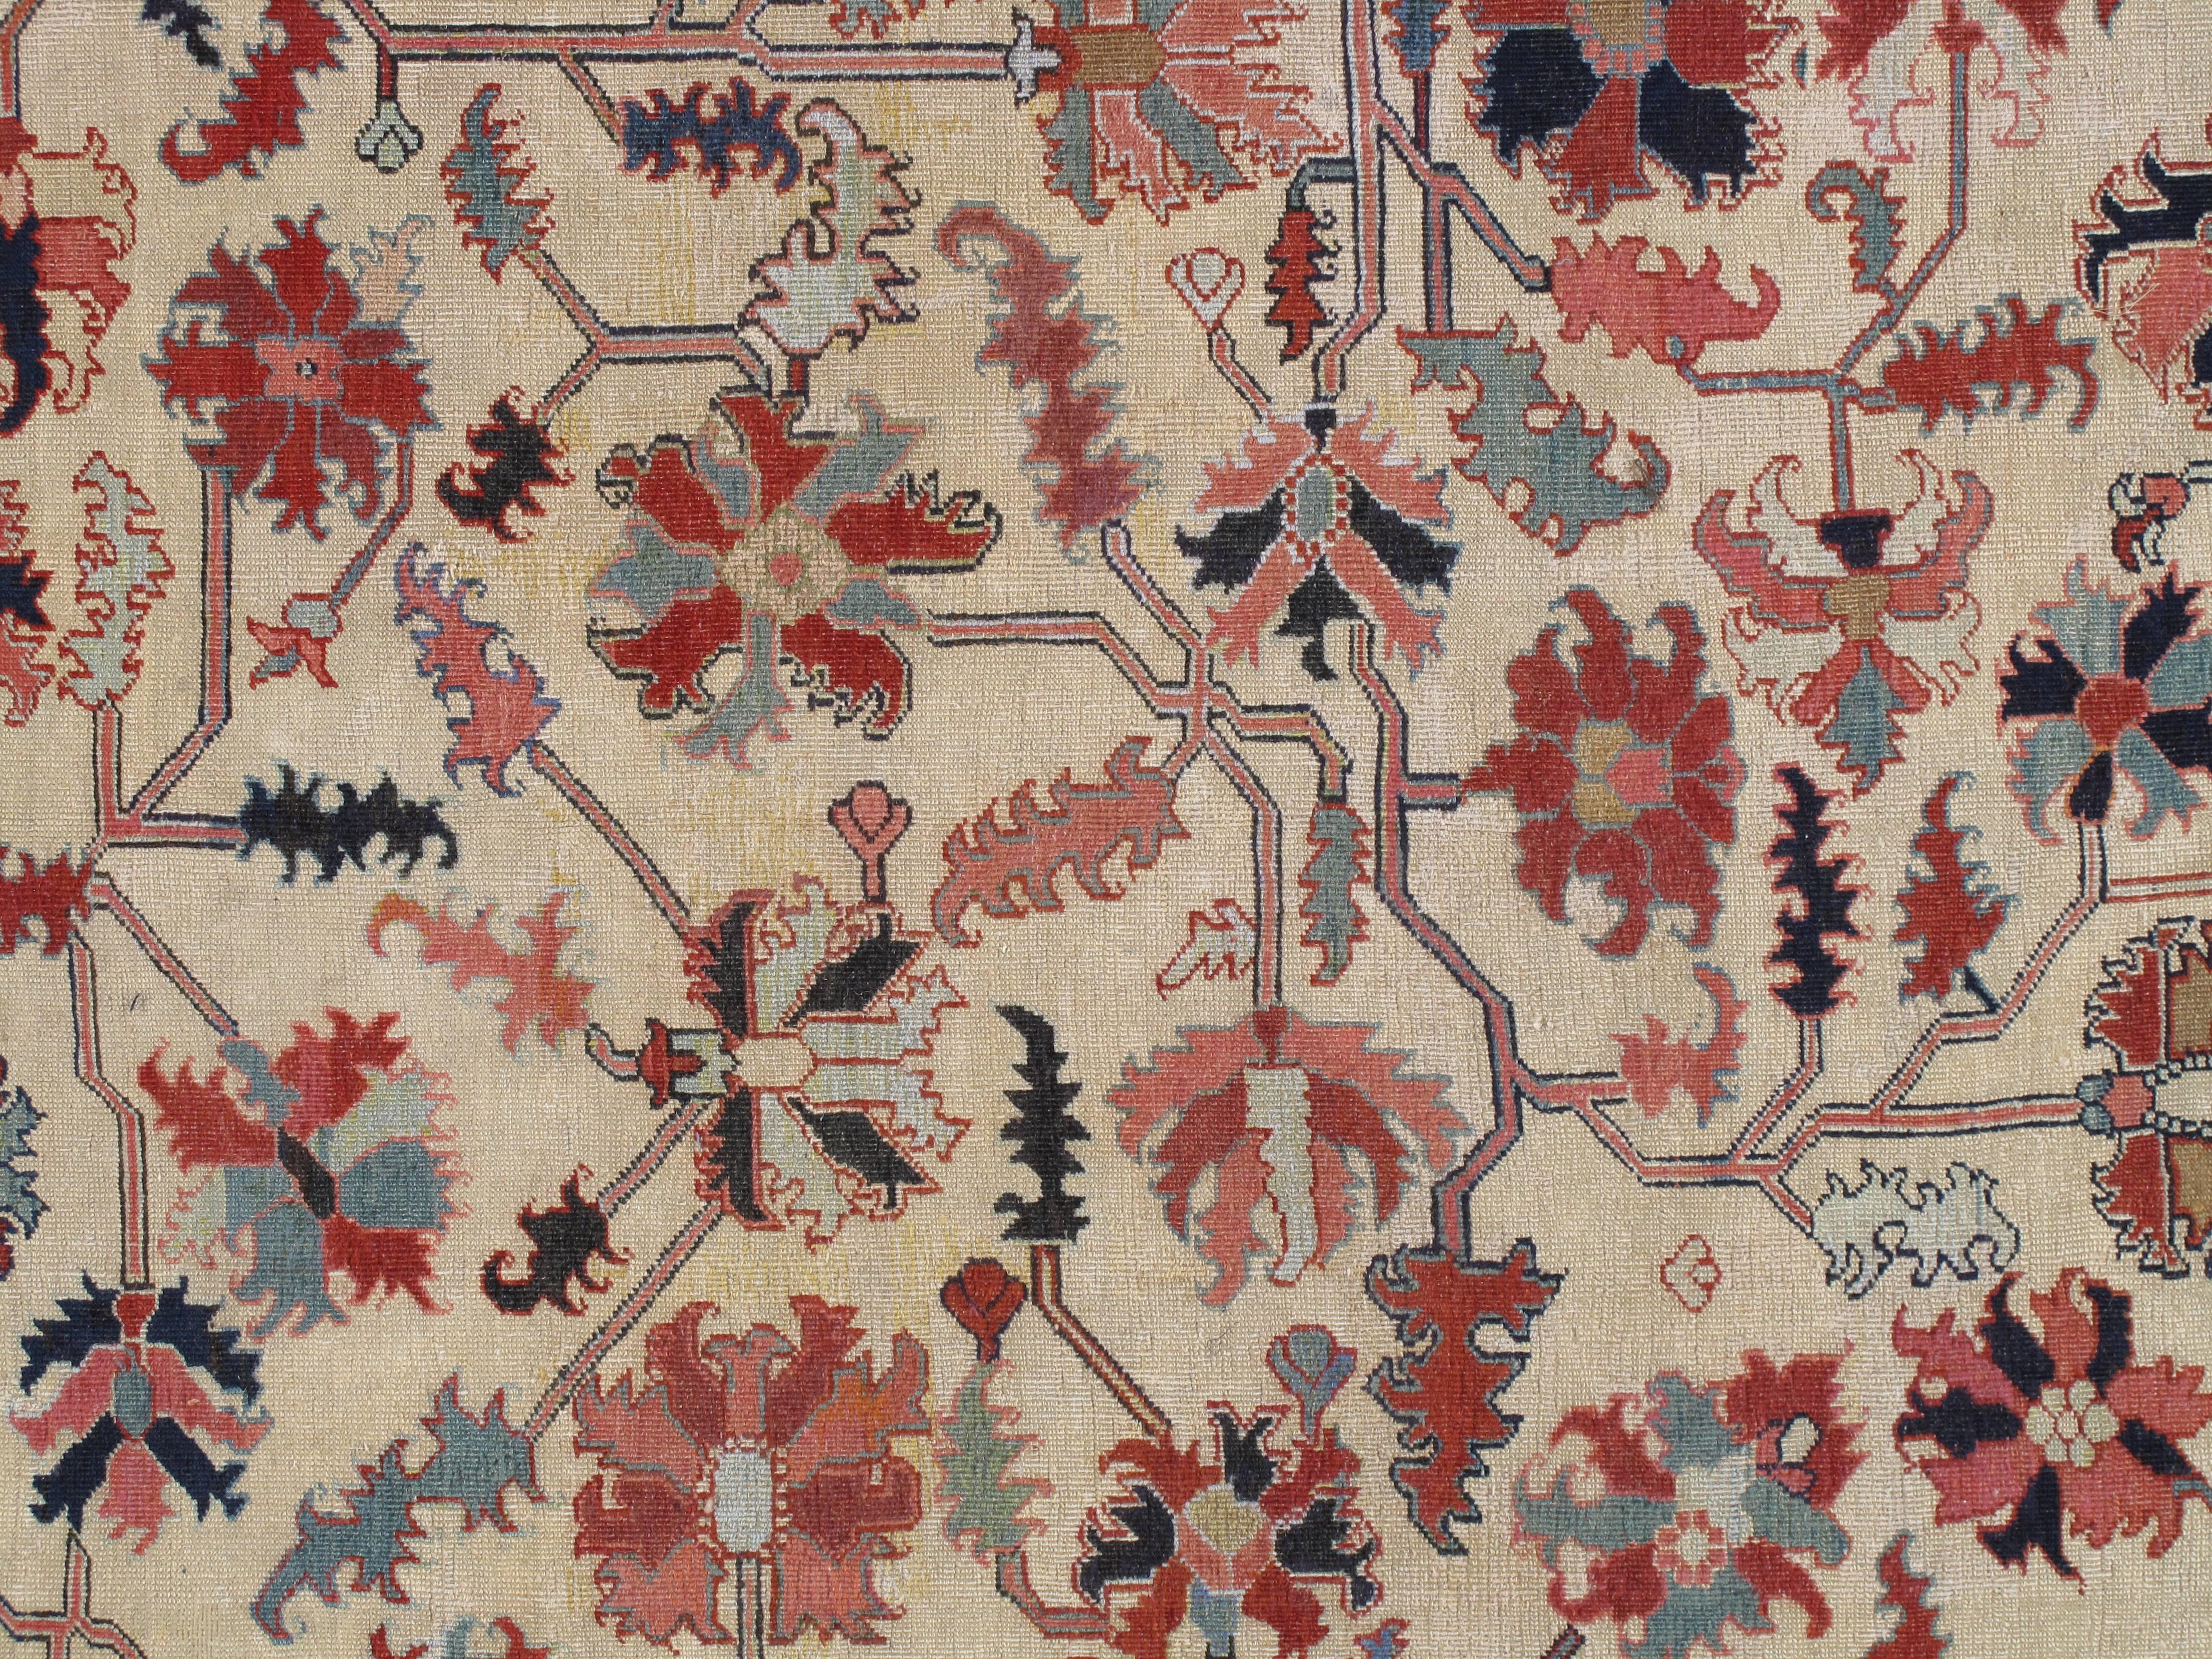 Antike Serapi-Teppiche sind vor allem in Amerika und England seit vielen Jahren einer der begehrtesten Teppiche. Antike Serapi-Teppiche sind vor allem in den amerikanischen Großstädten sehr beliebt. Serapi-Teppiche wurden in kleinen Werkstätten